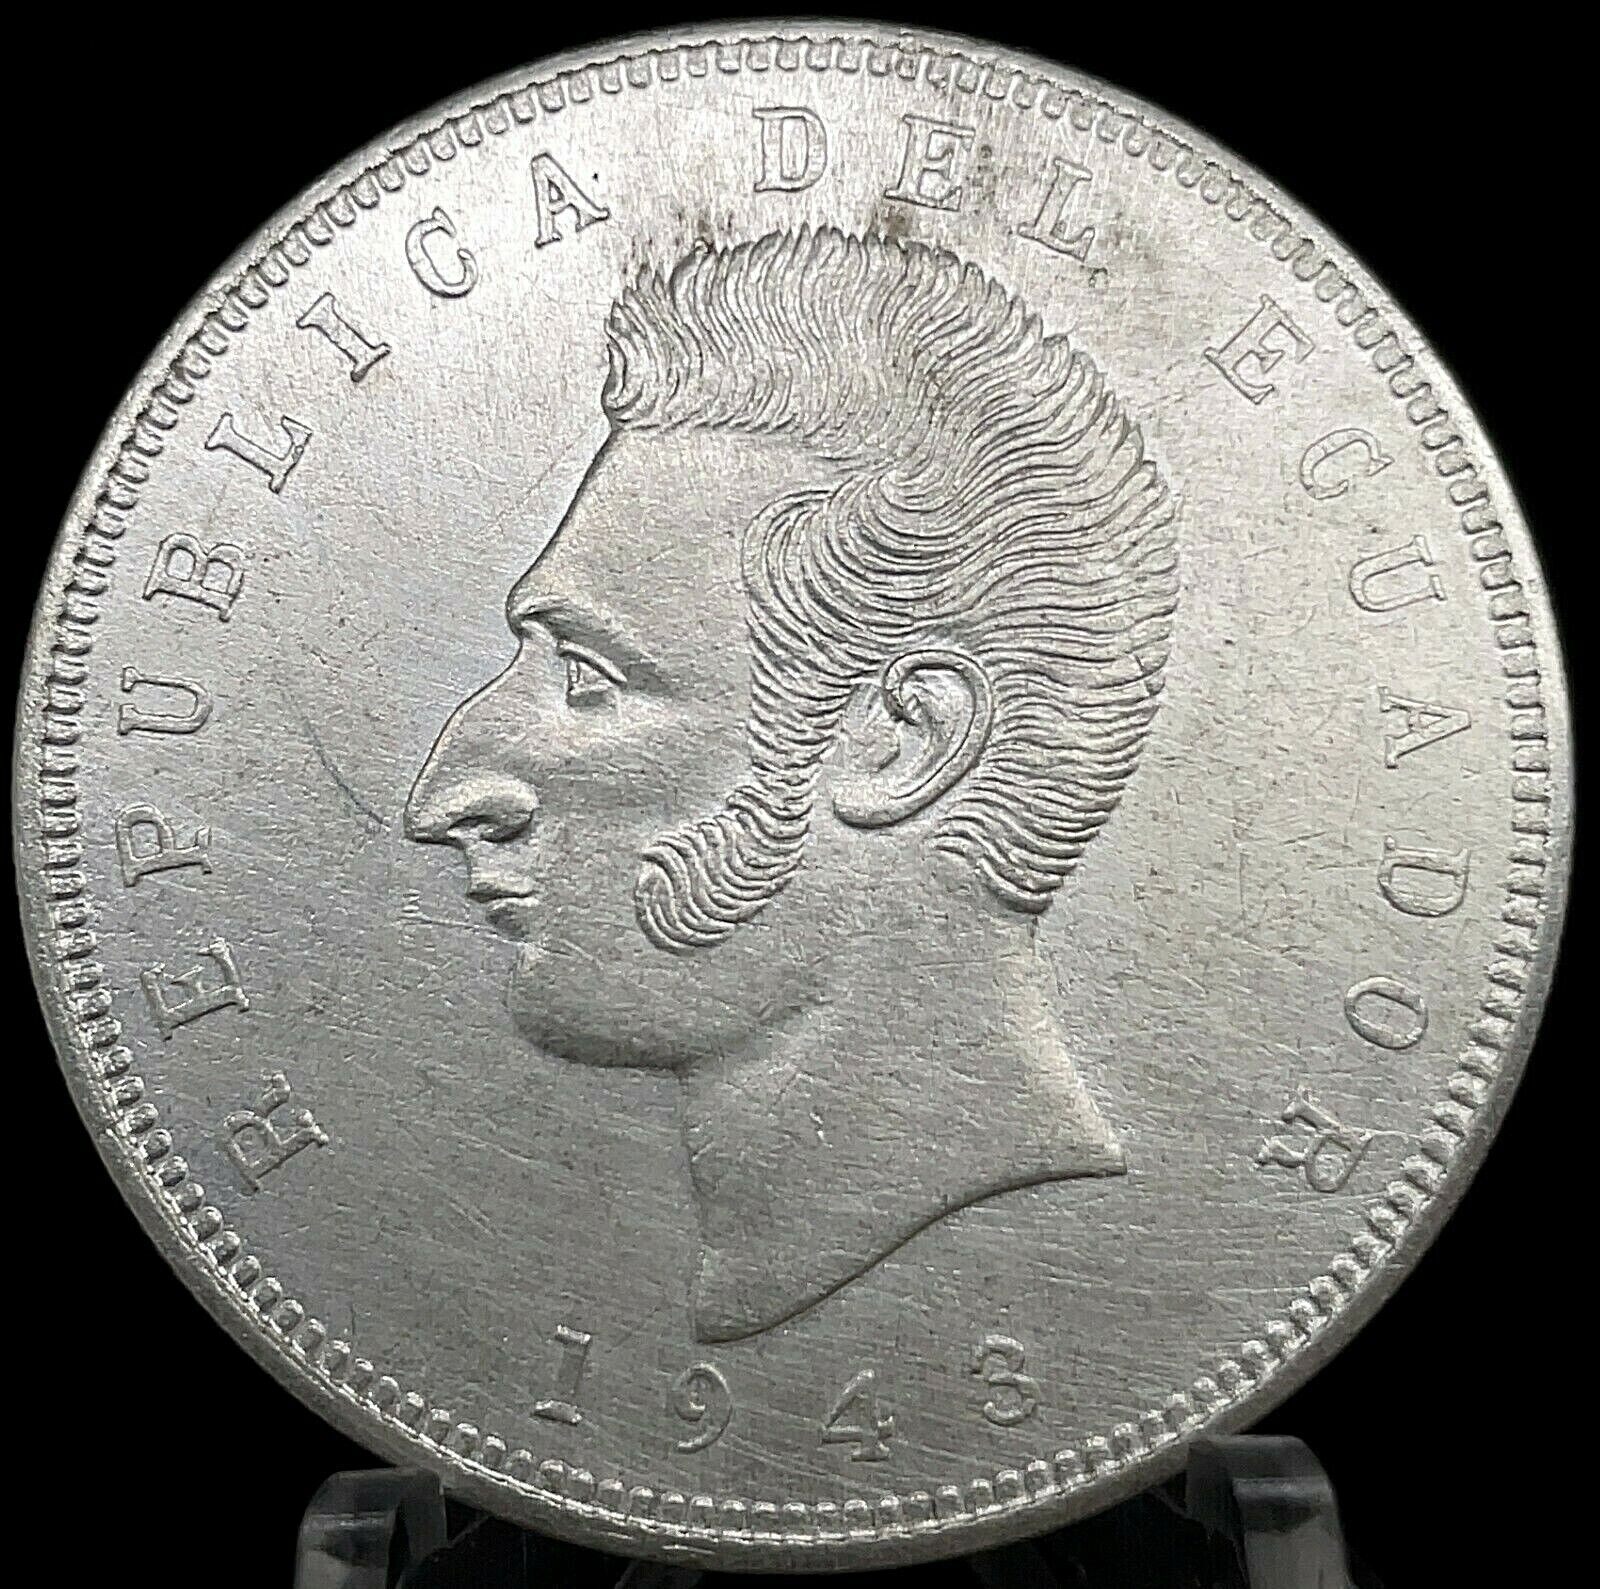 Ecuador 5 Sucres 1943 Mexico City Mint Uncirculated Silver Coin KM #79  C#6